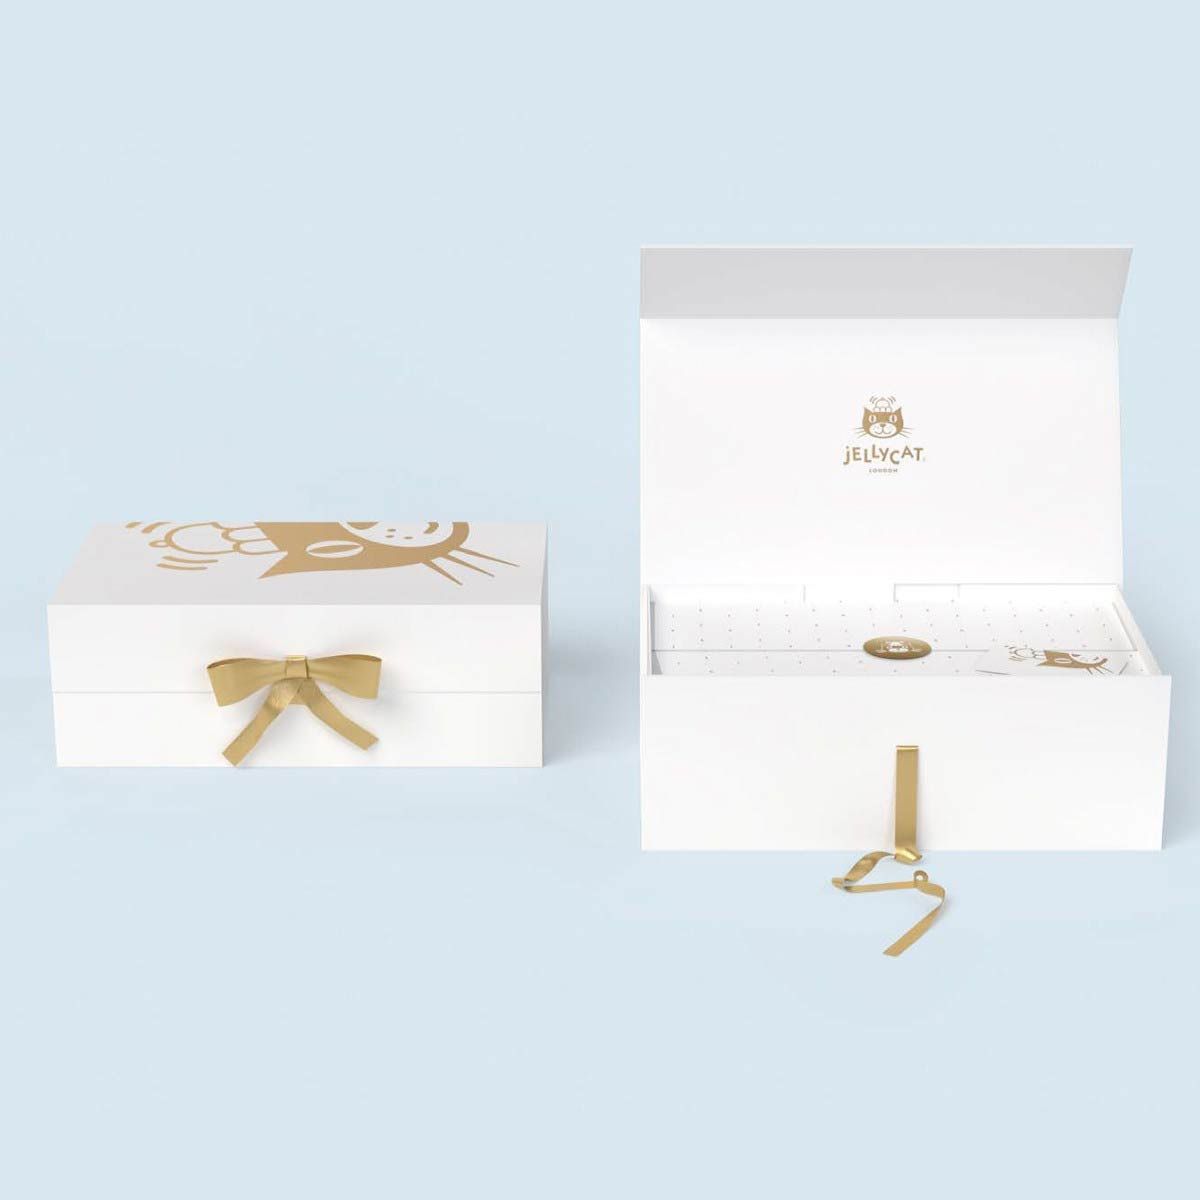 Hvid Jellycat gaveæske med guld detaljer til indpakning af Bashful kanin